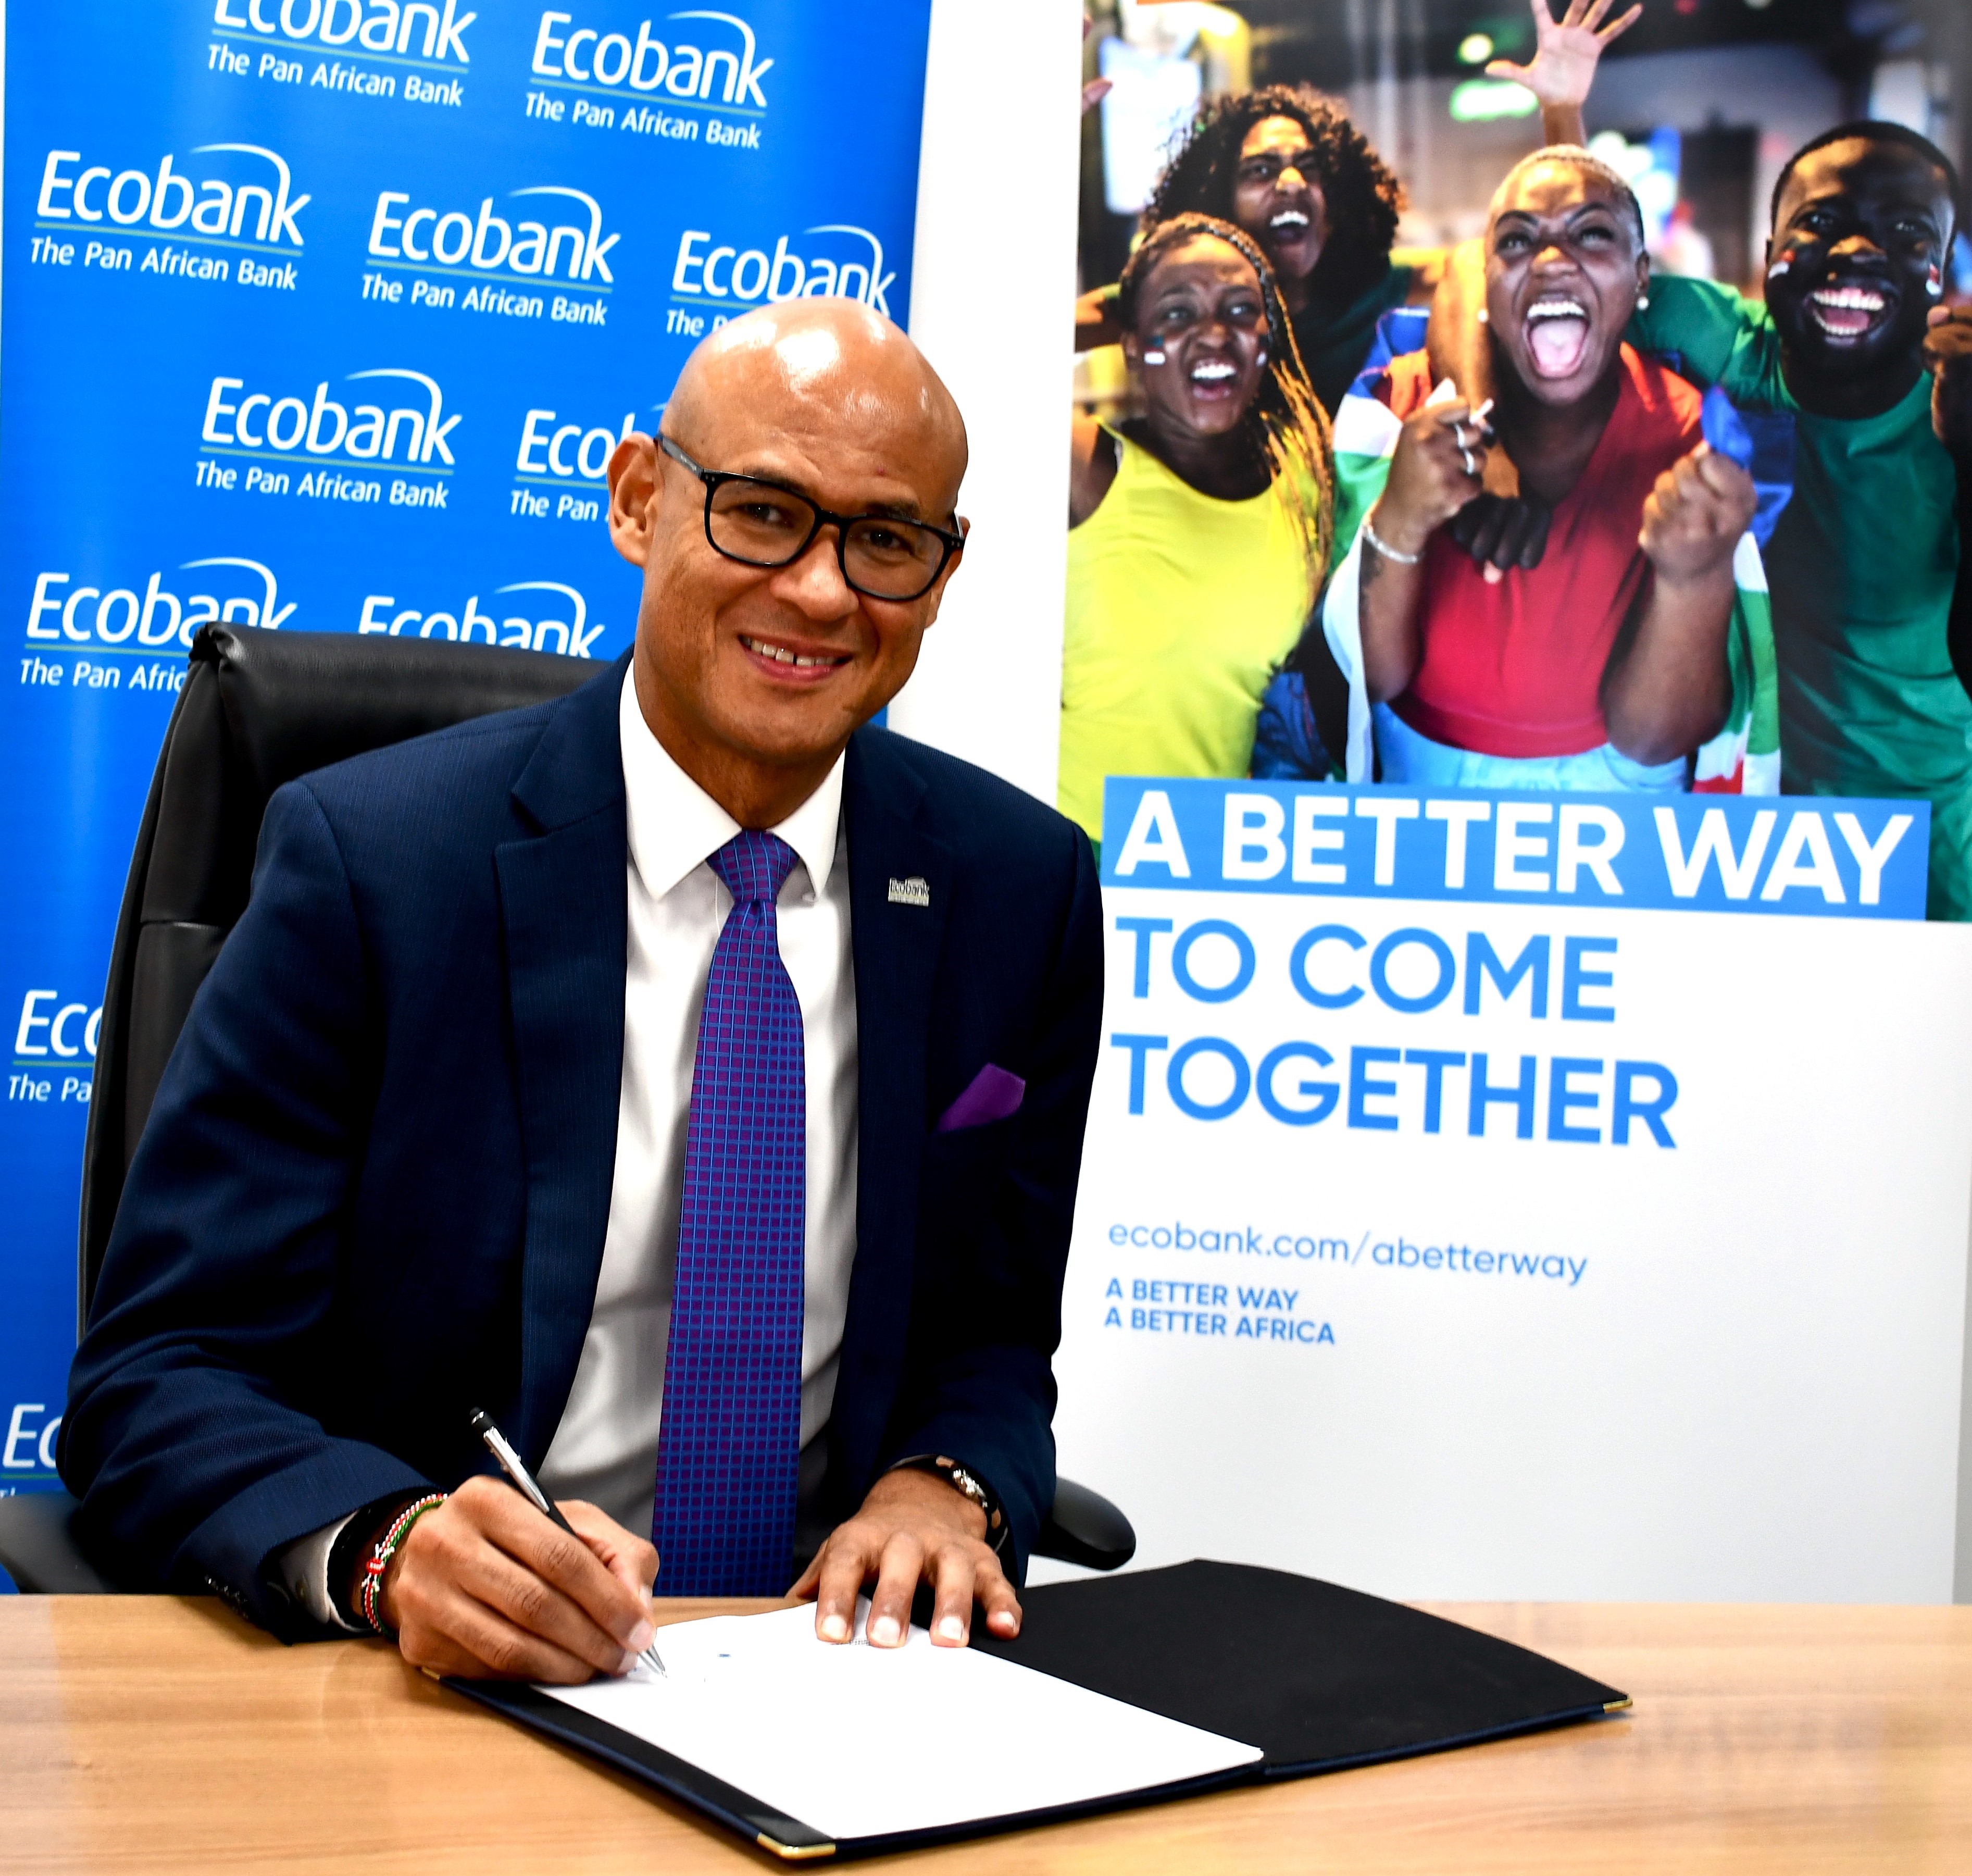 Le Groupe Ecobank signe les Principes d'autonomisation des femmes de l'ONU Femmes